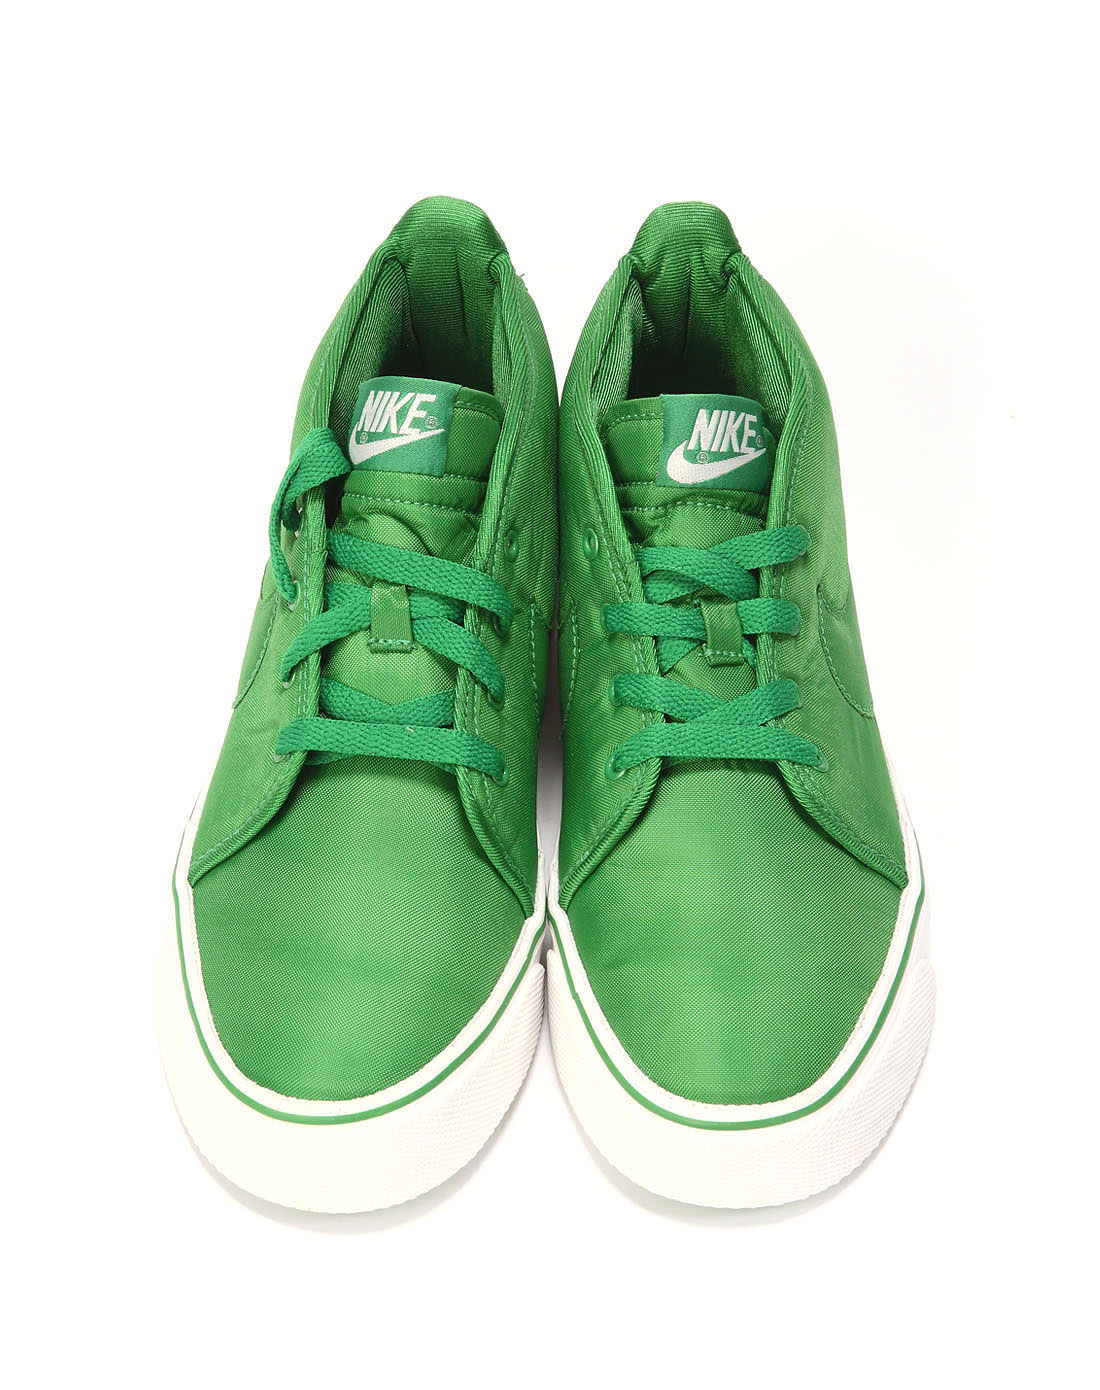 上面那双鞋的那个绿色的小东西应该是可以弄在任何鞋子上可以使鞋带不